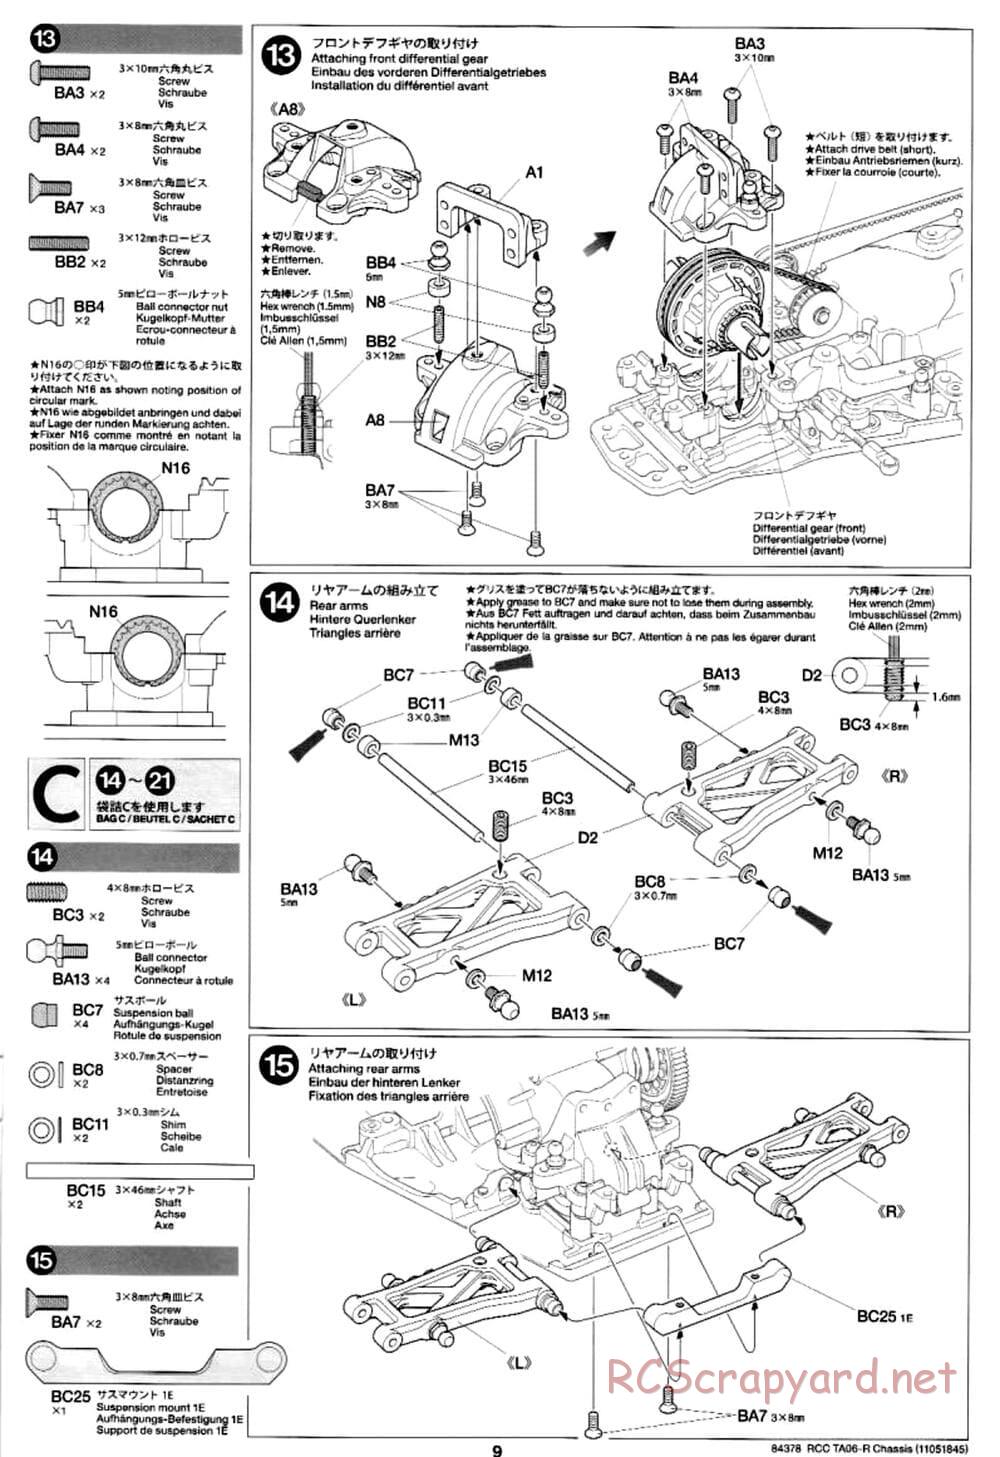 Tamiya - TA06-R Chassis - Manual - Page 9